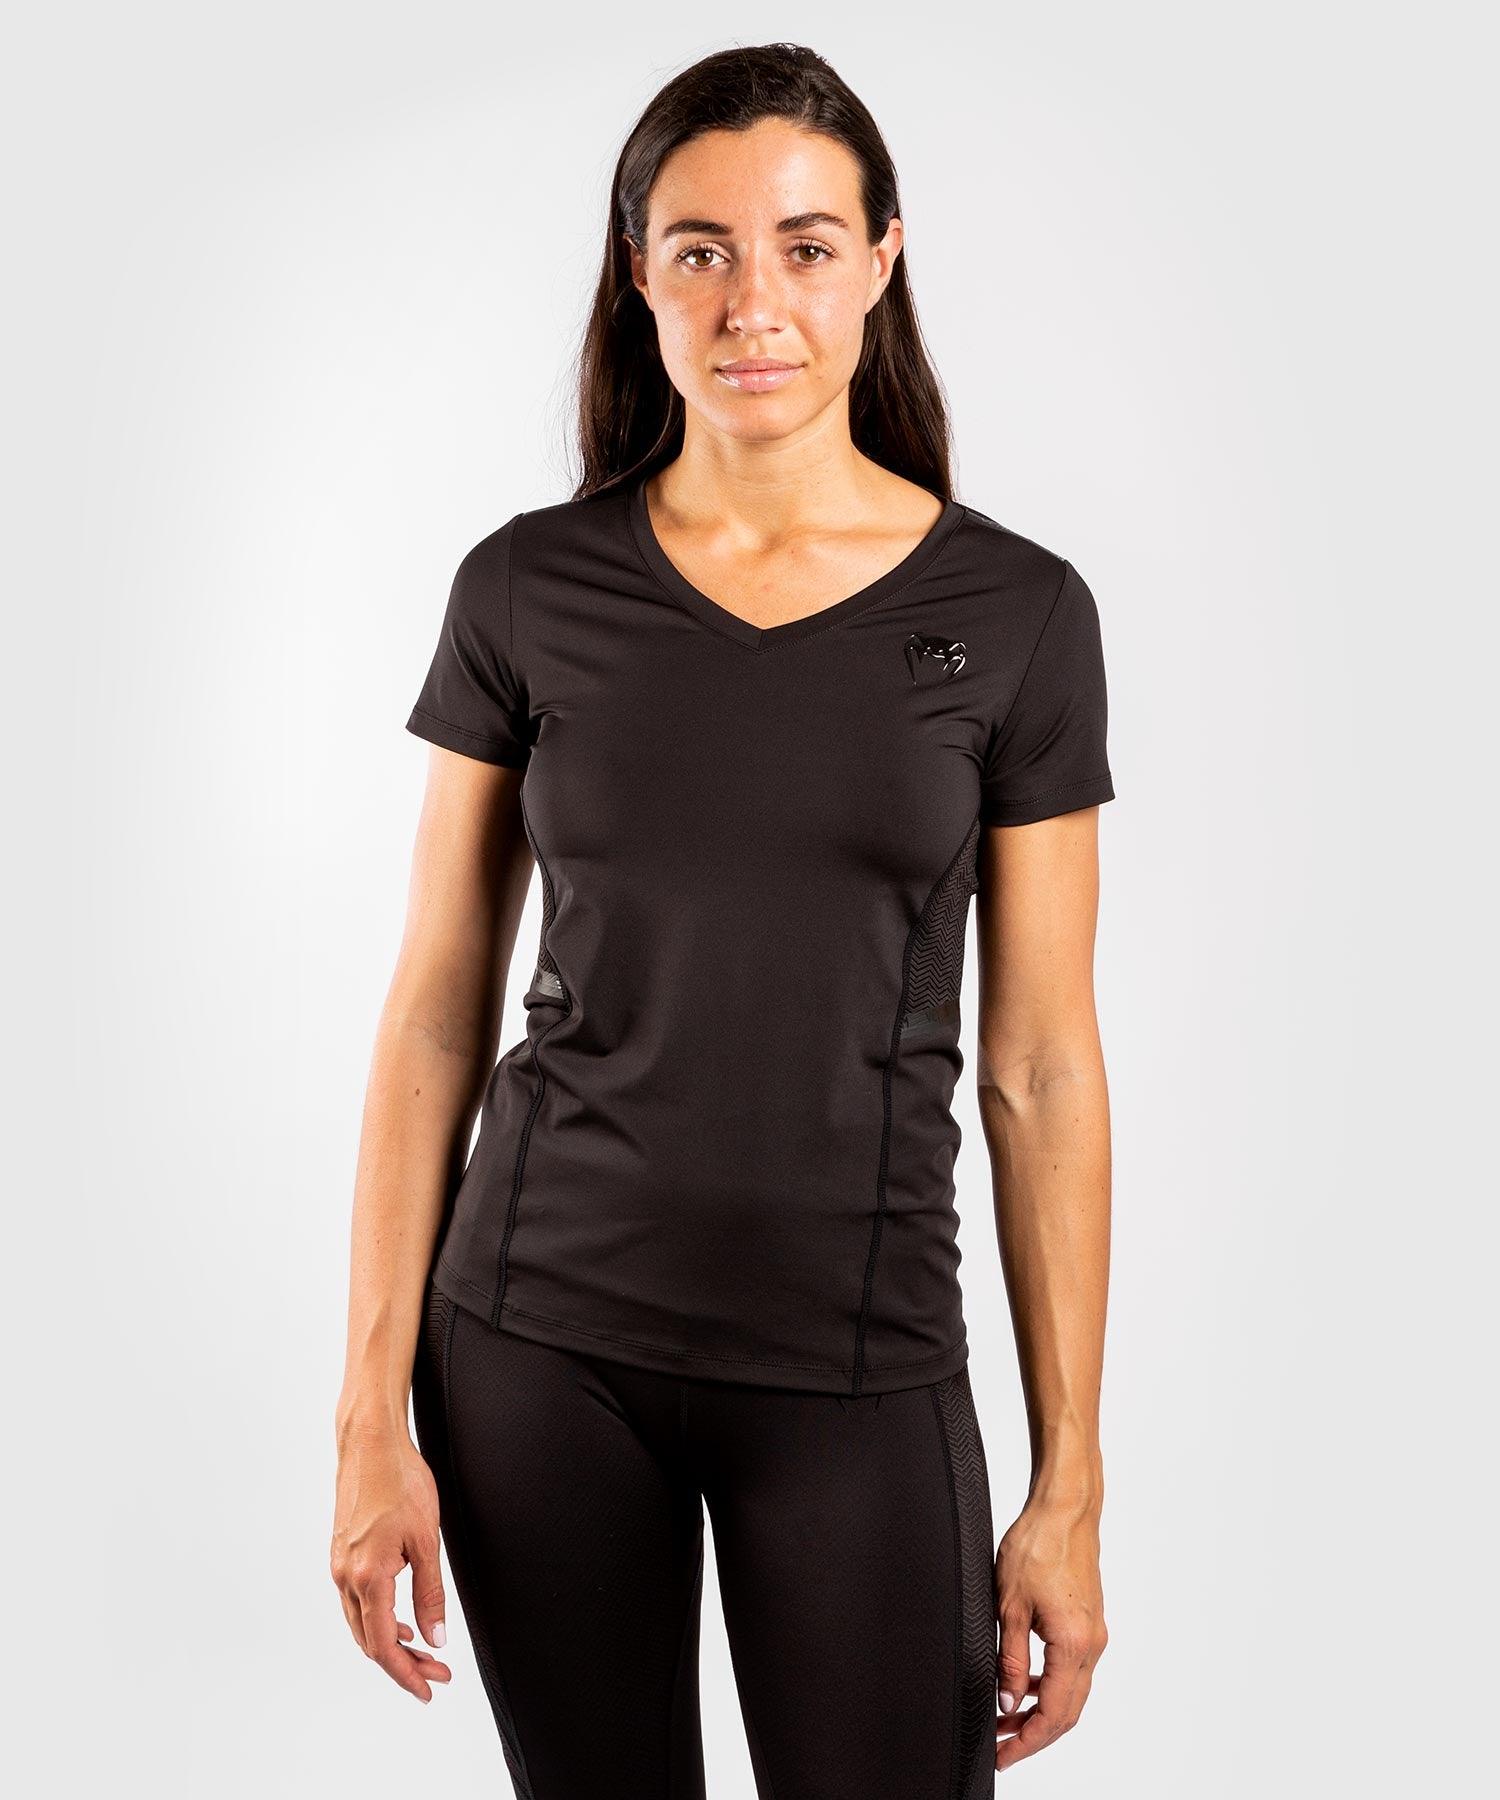 Venum G-Fit Dry-Tech T-shirt - For Women - Black/Black Picture 1